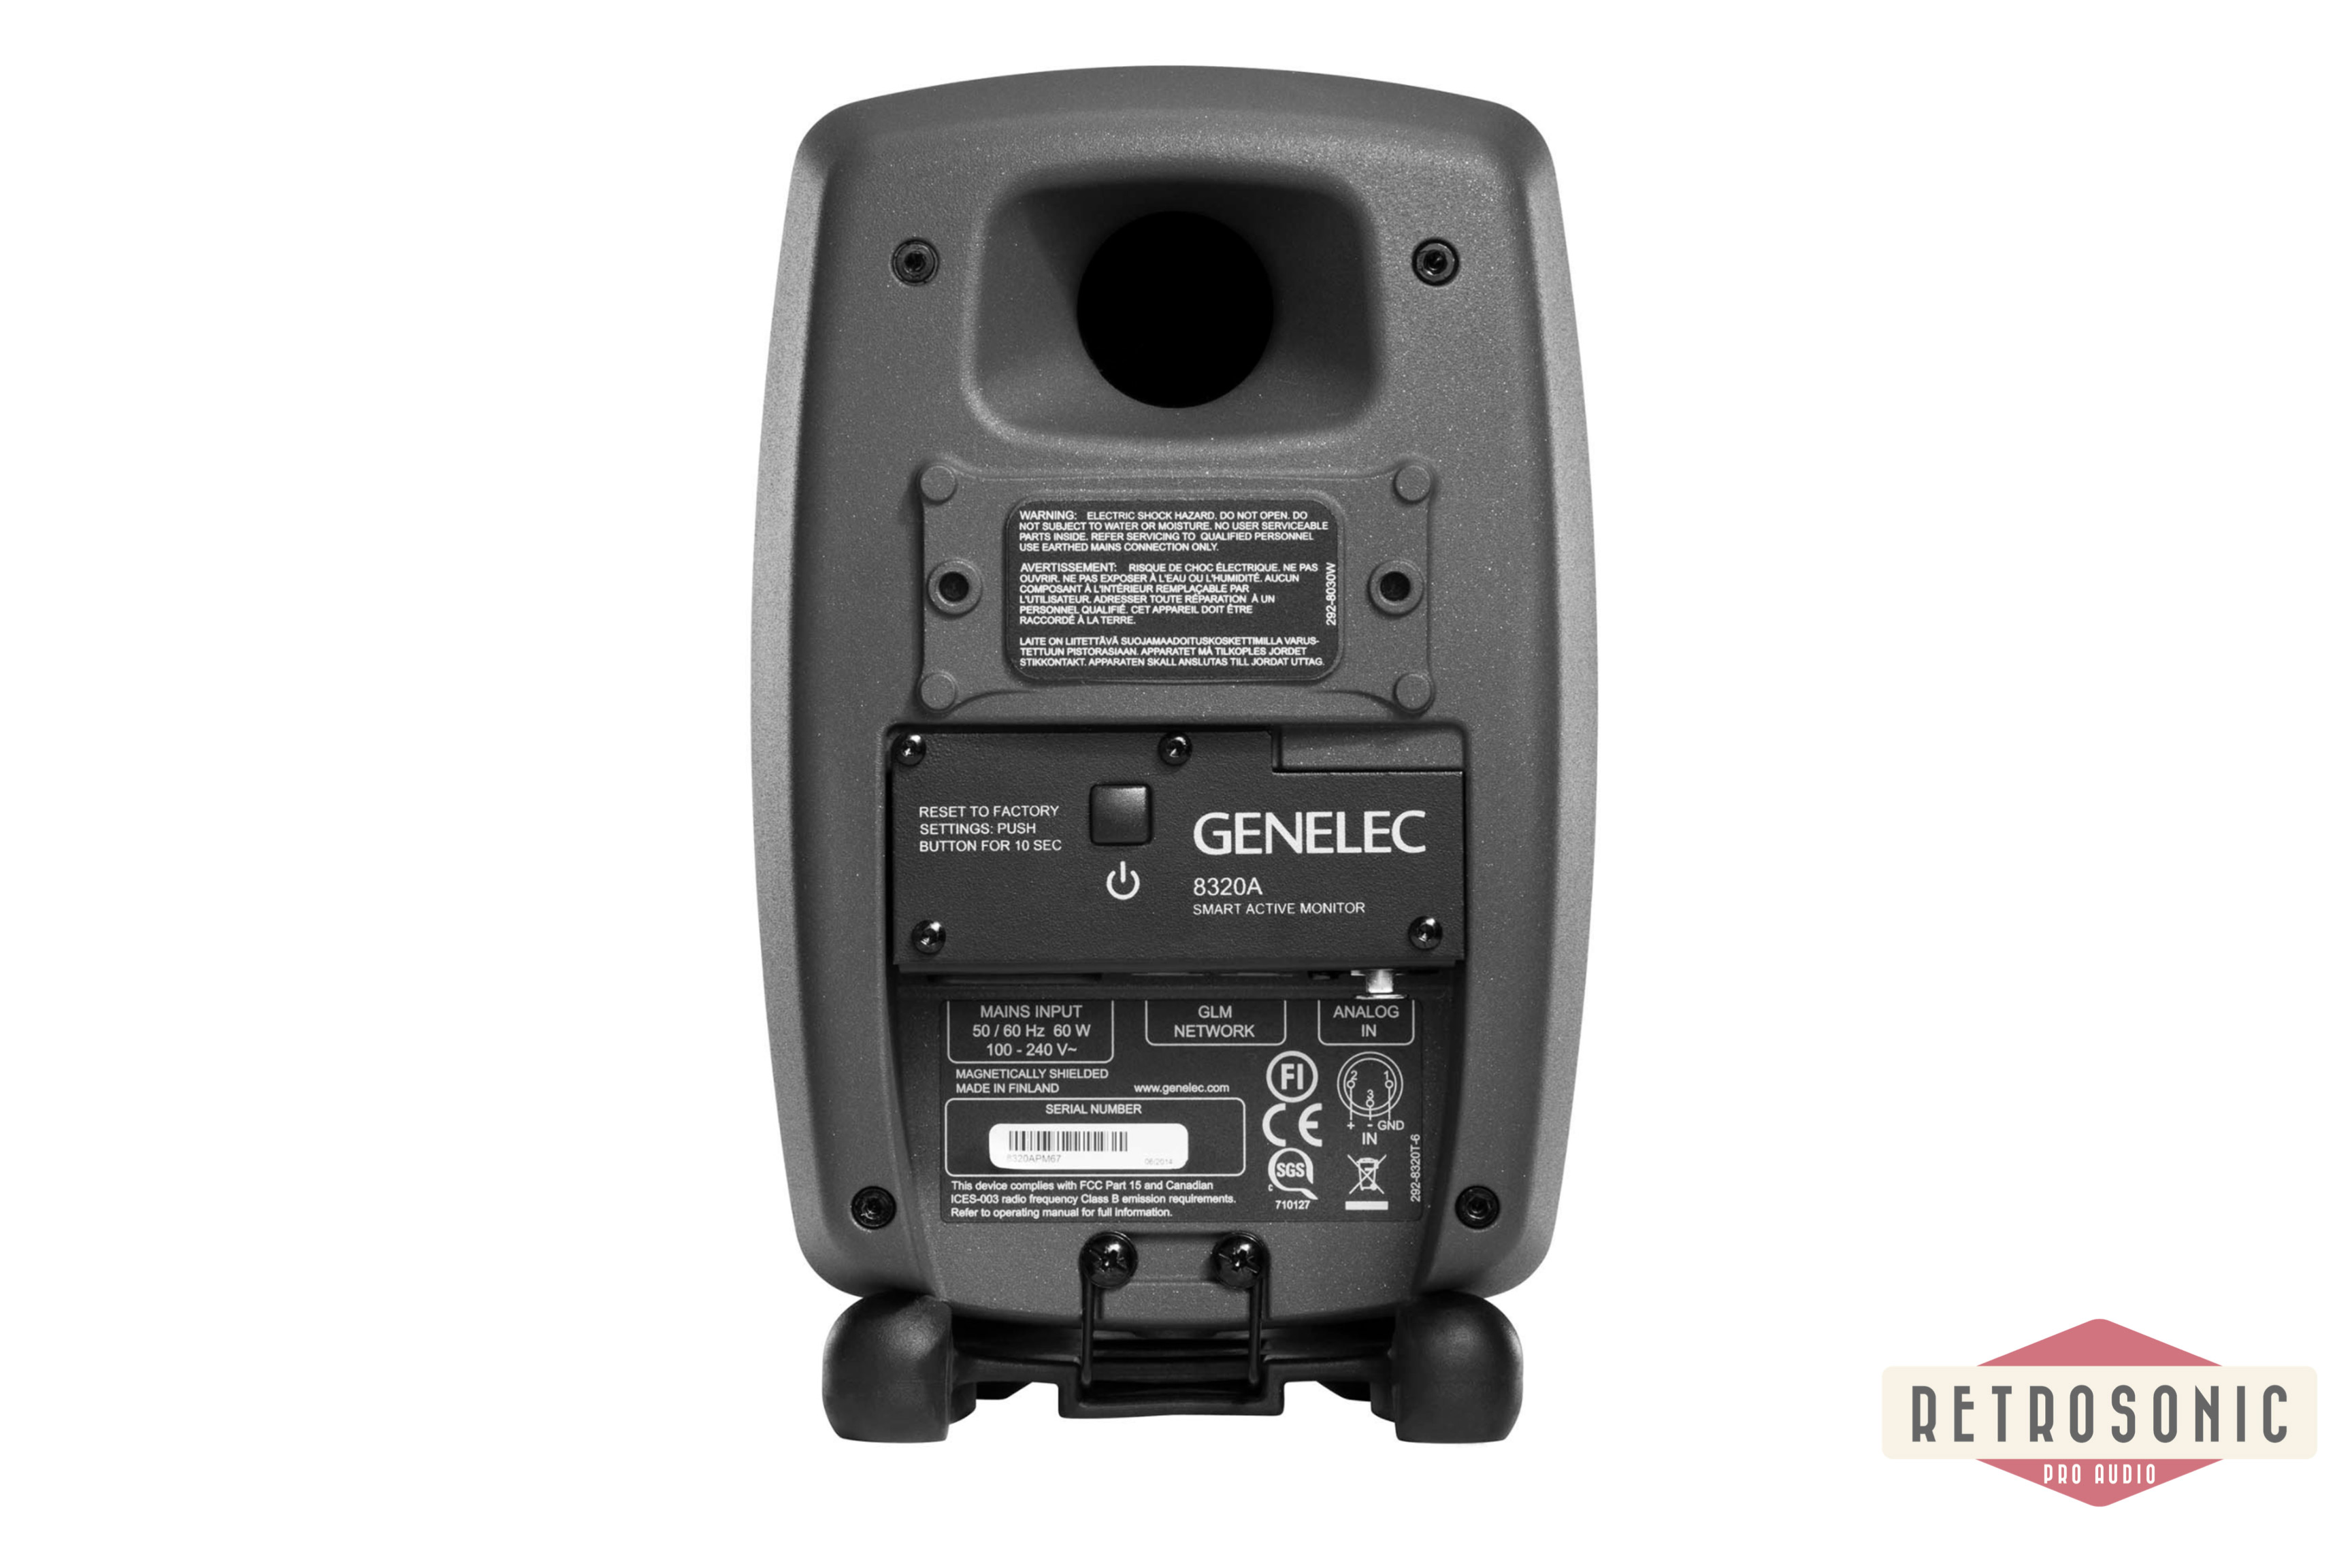 Genelec Monitor SAM 8320A dark grey